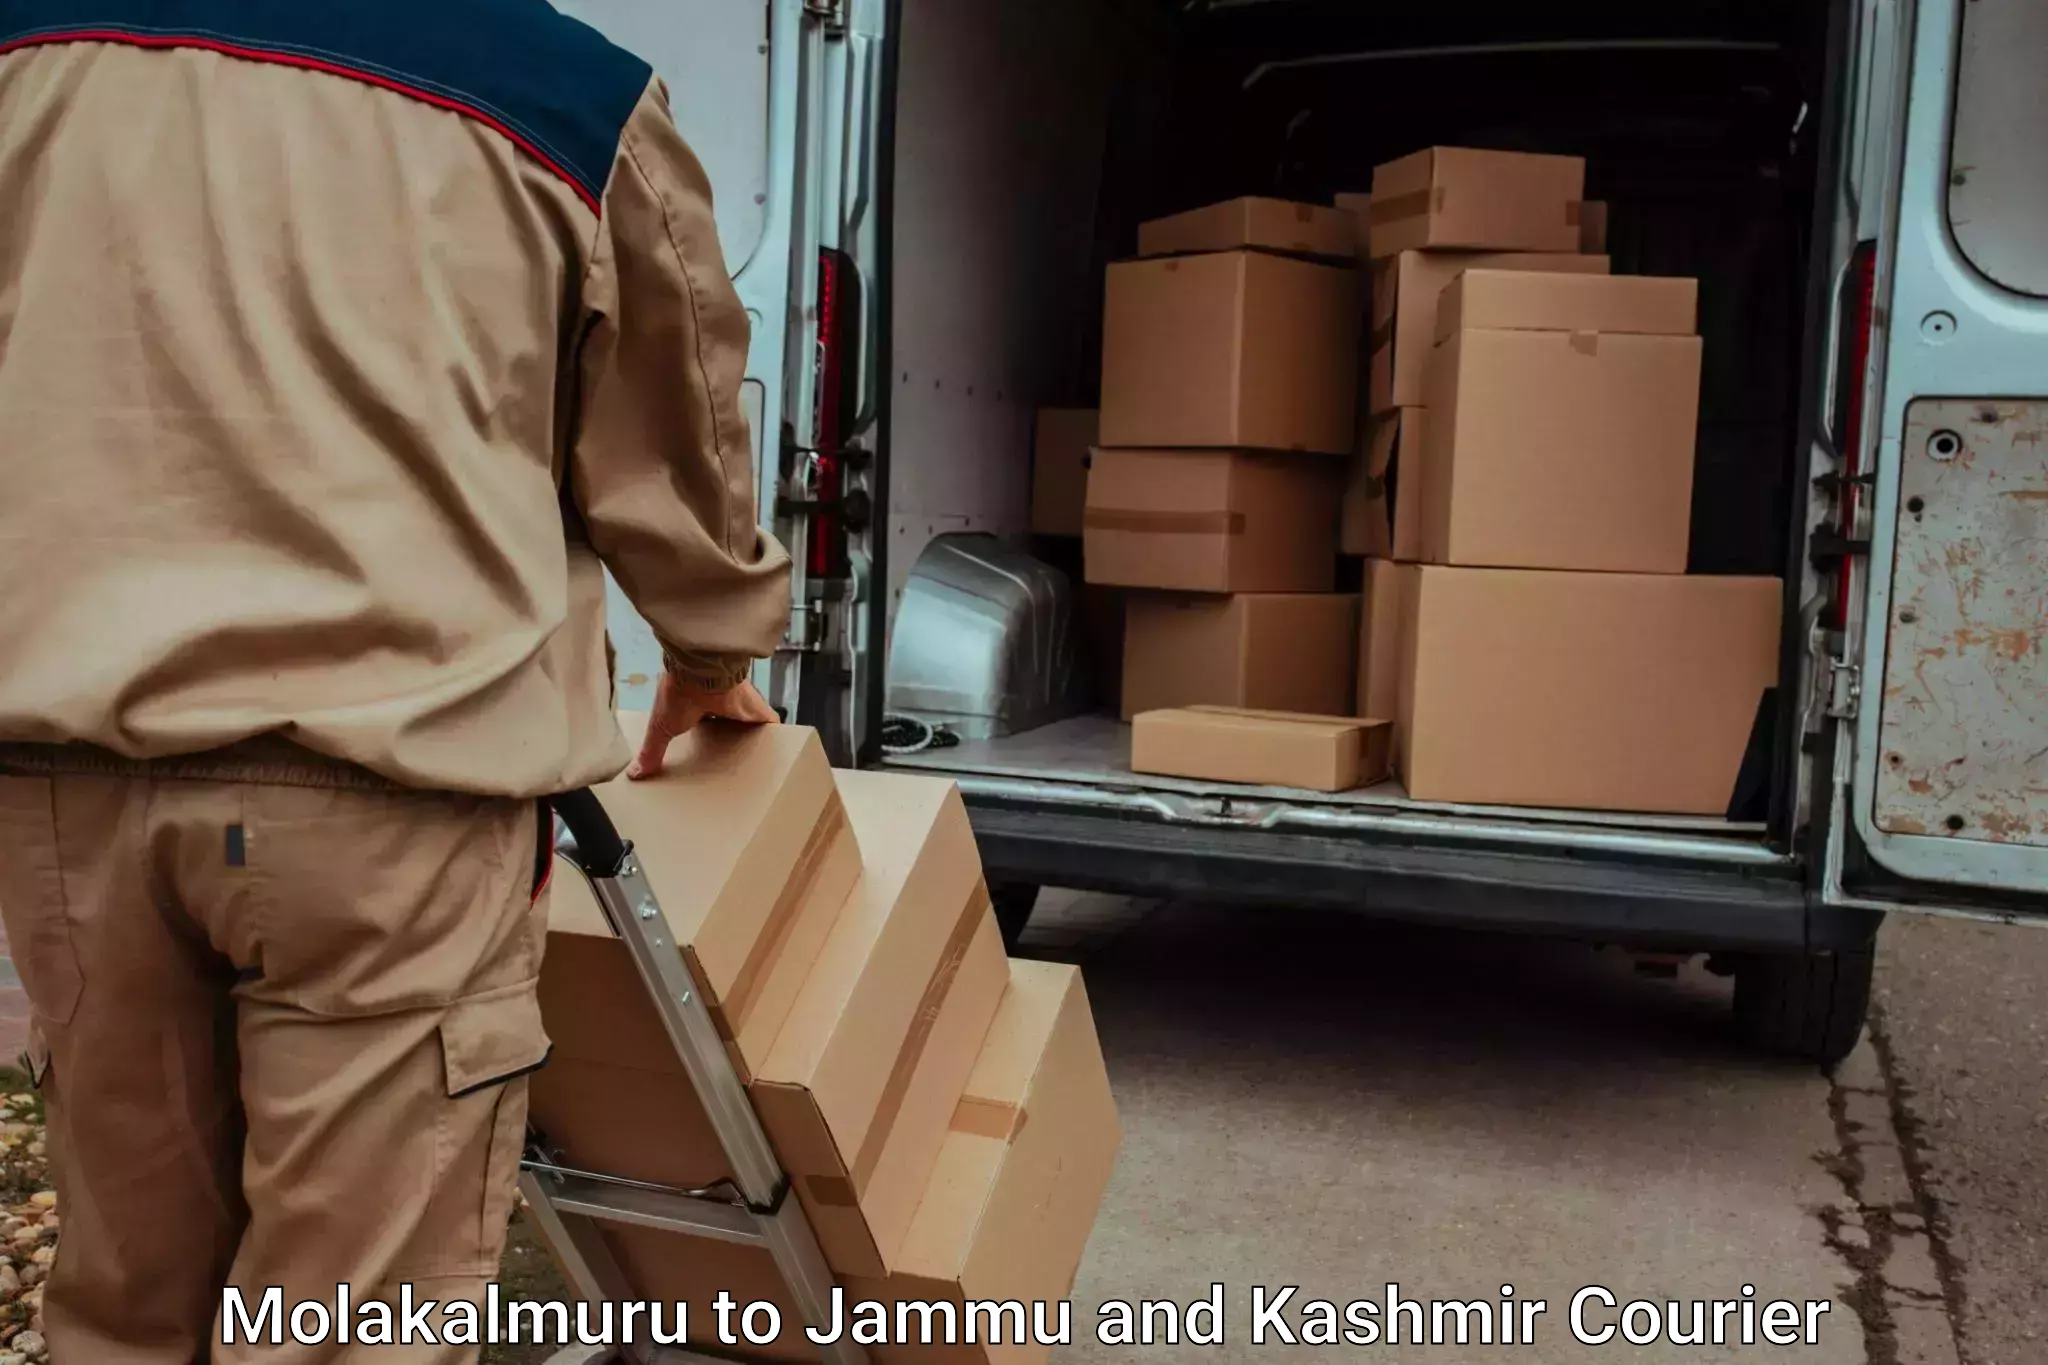 Customized luggage delivery Molakalmuru to Bandipur